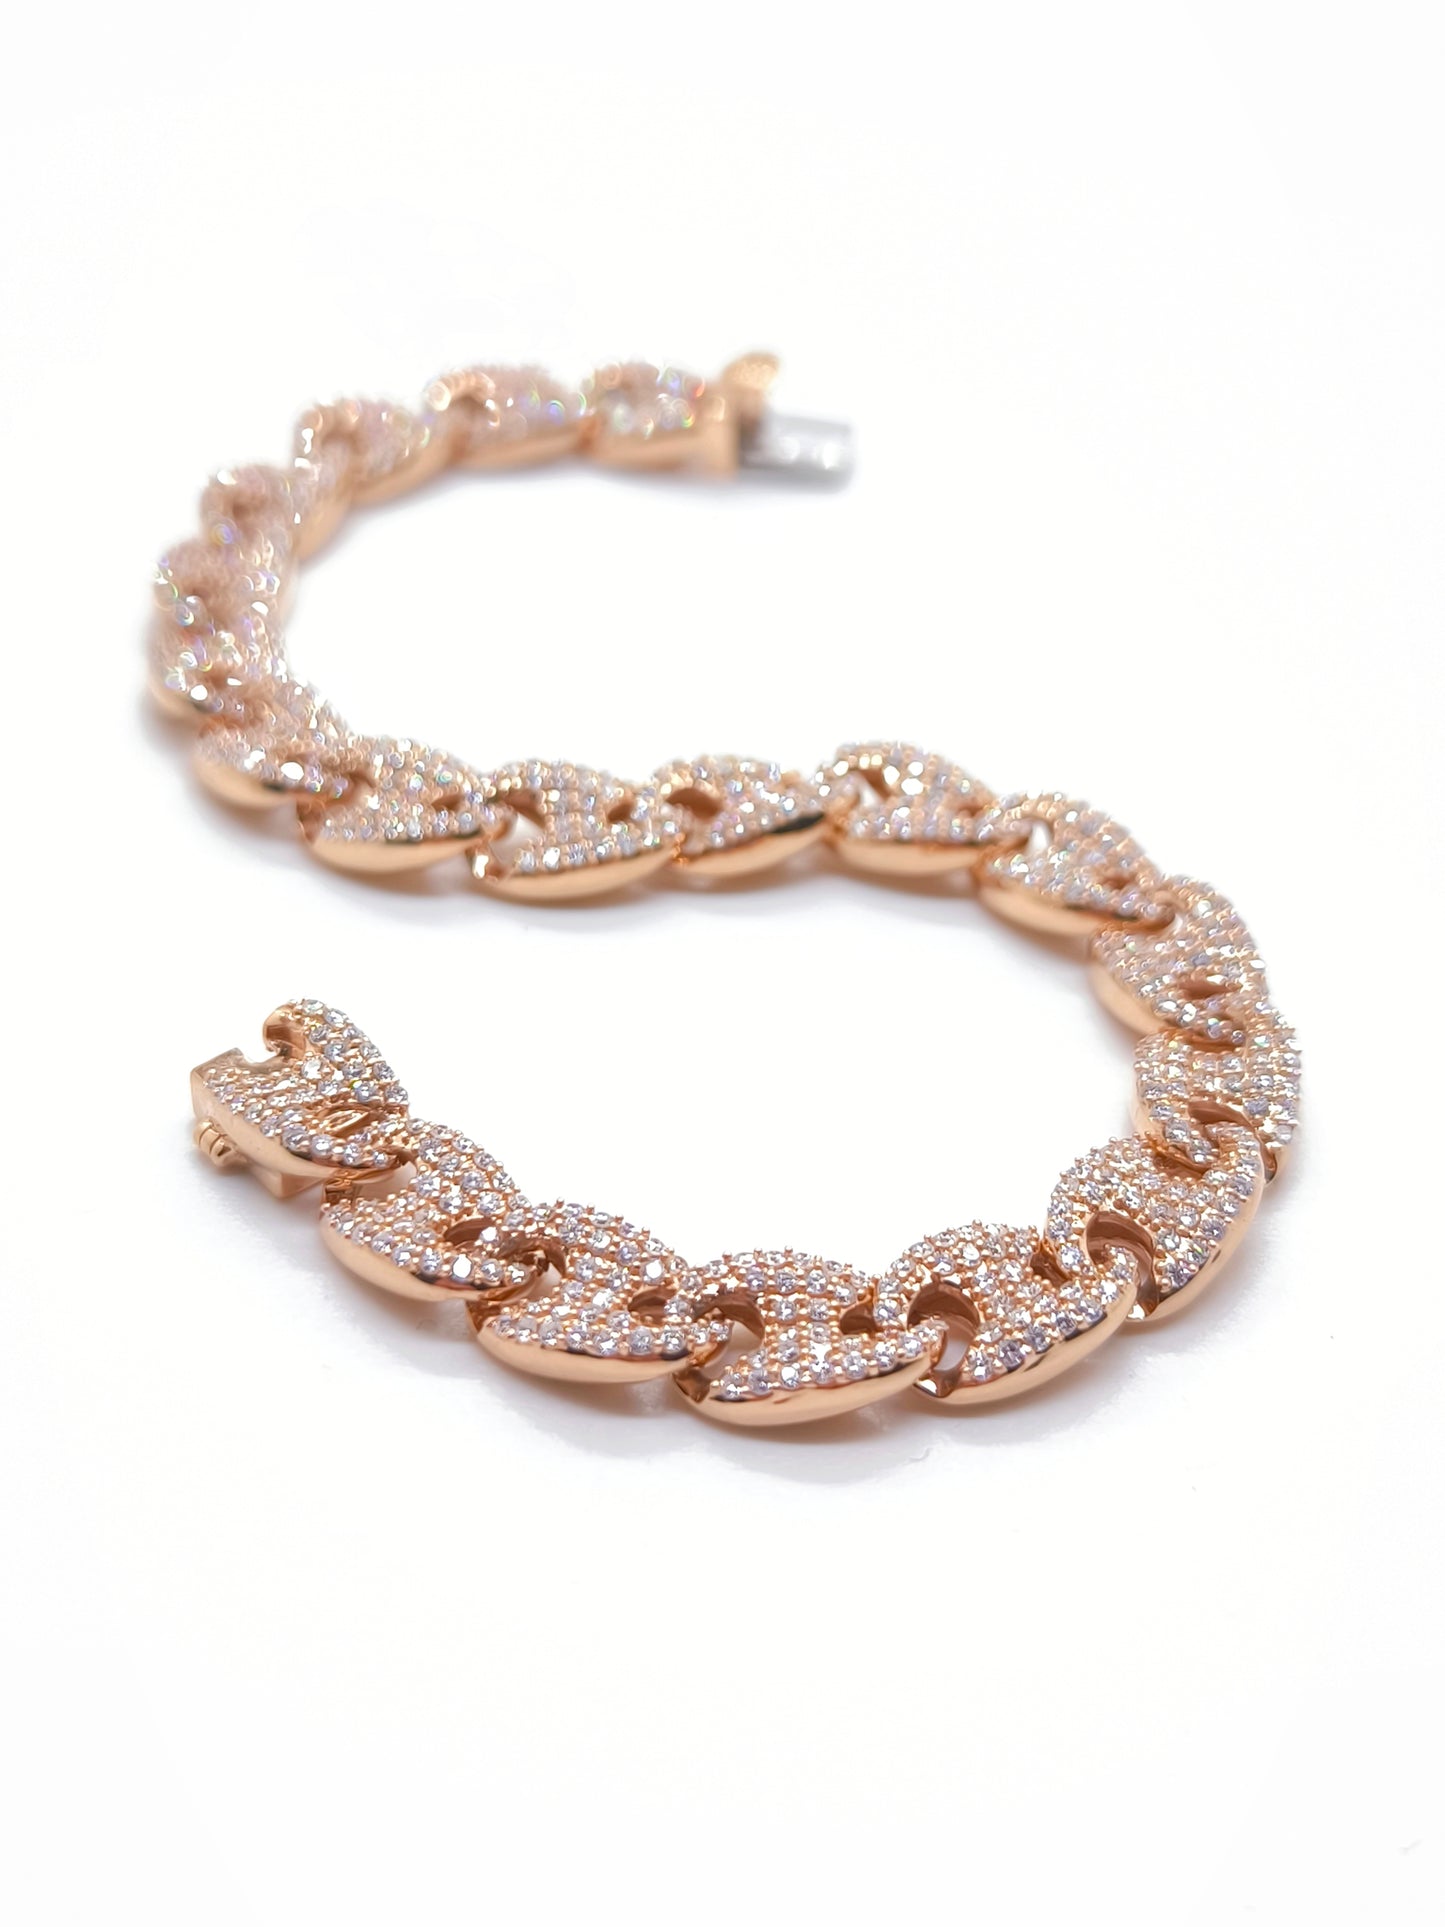 Solid gold bracelet with pavé diamonds